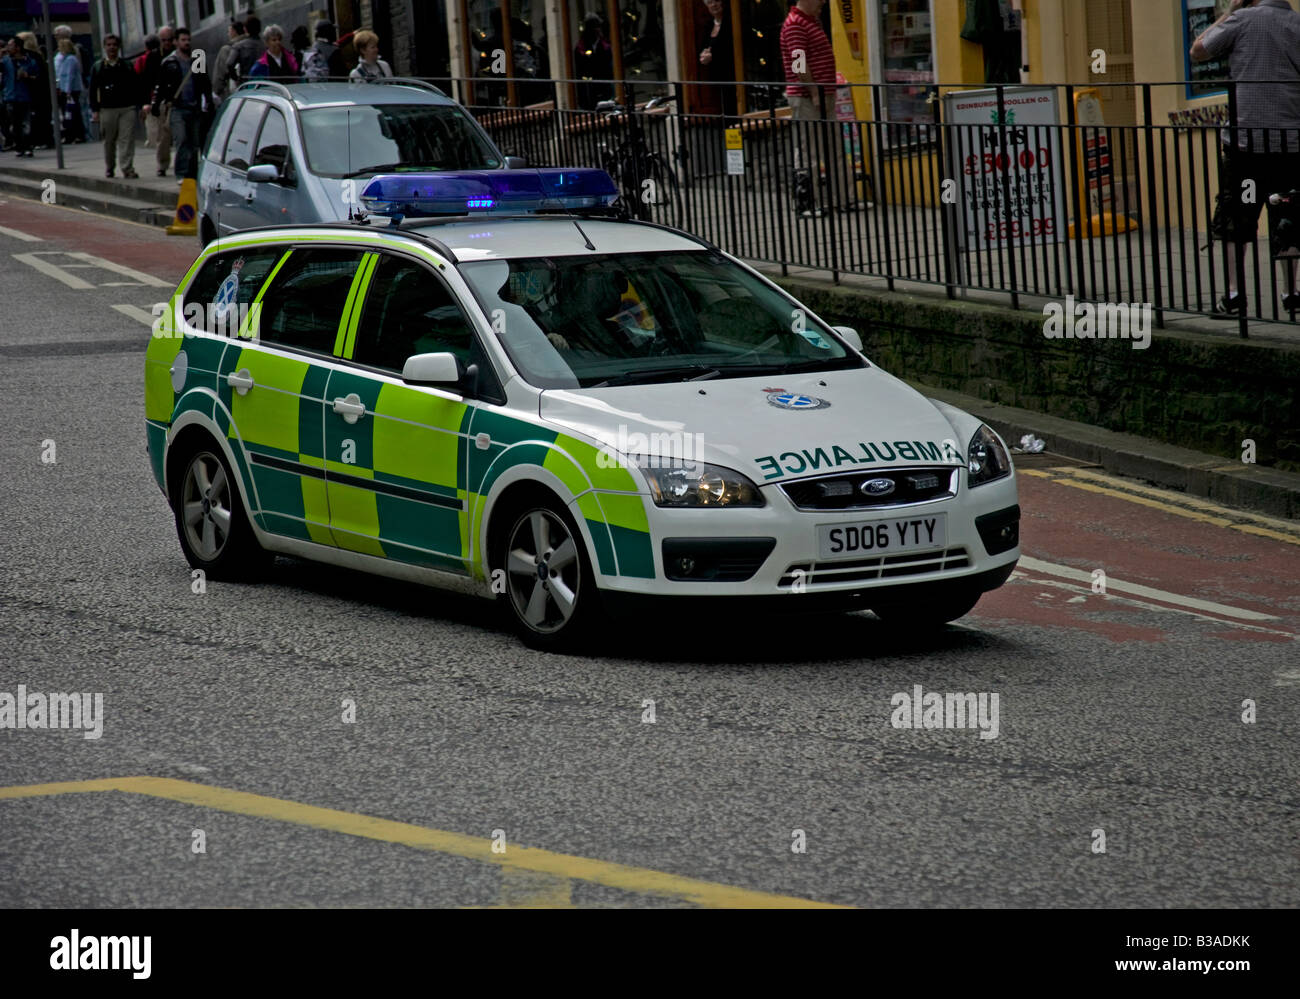 Ambulance vehicle with blue flashing lights proceeding to an emergency, Edinburgh, Scotland, UK, Europe Stock Photo